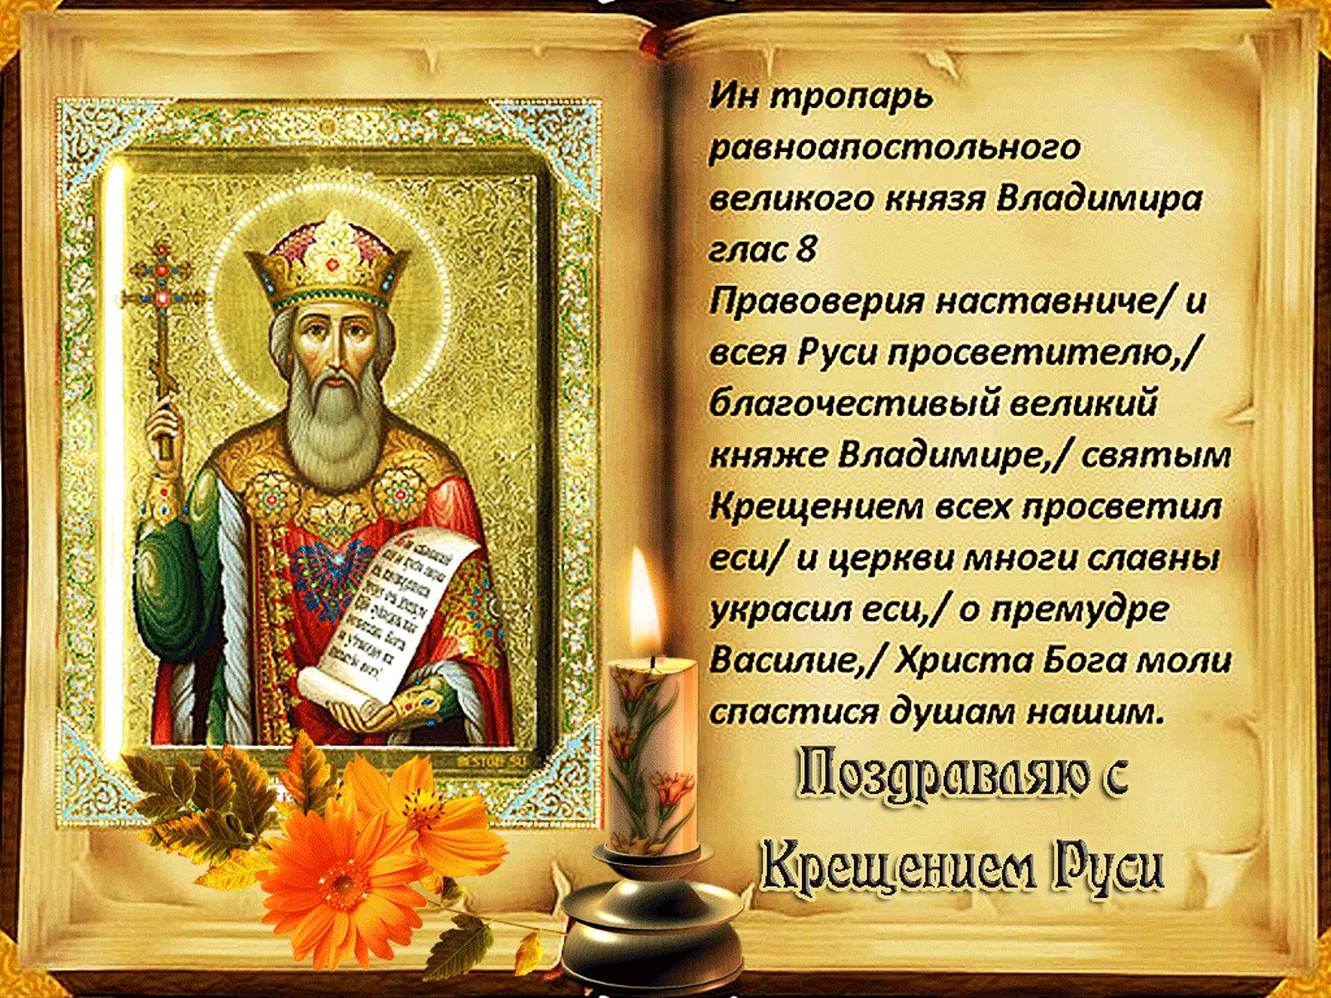 Большая открытка с днем крещения Руси